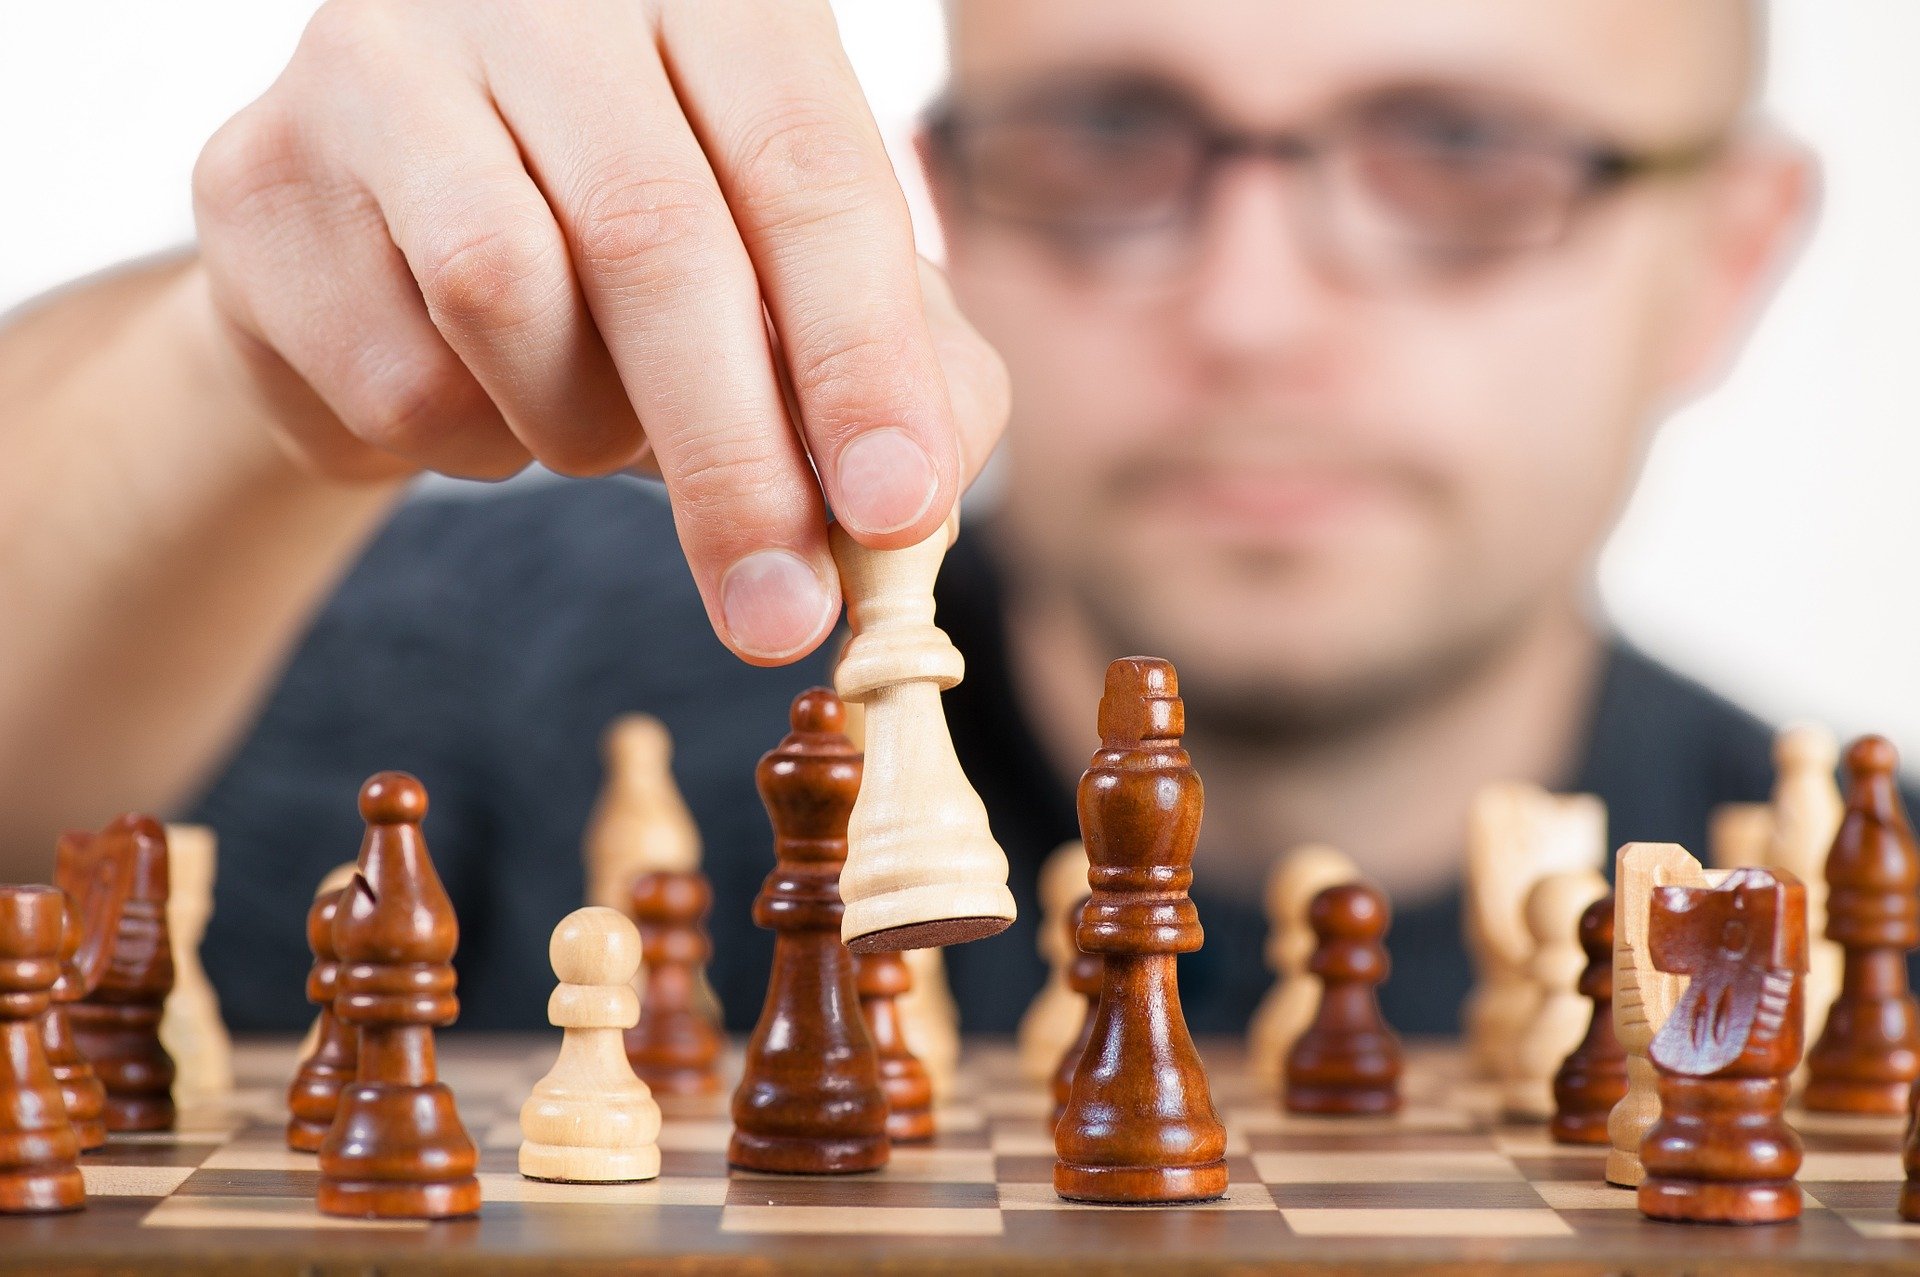 El ajedrez ha de ser primordialmente una recreación